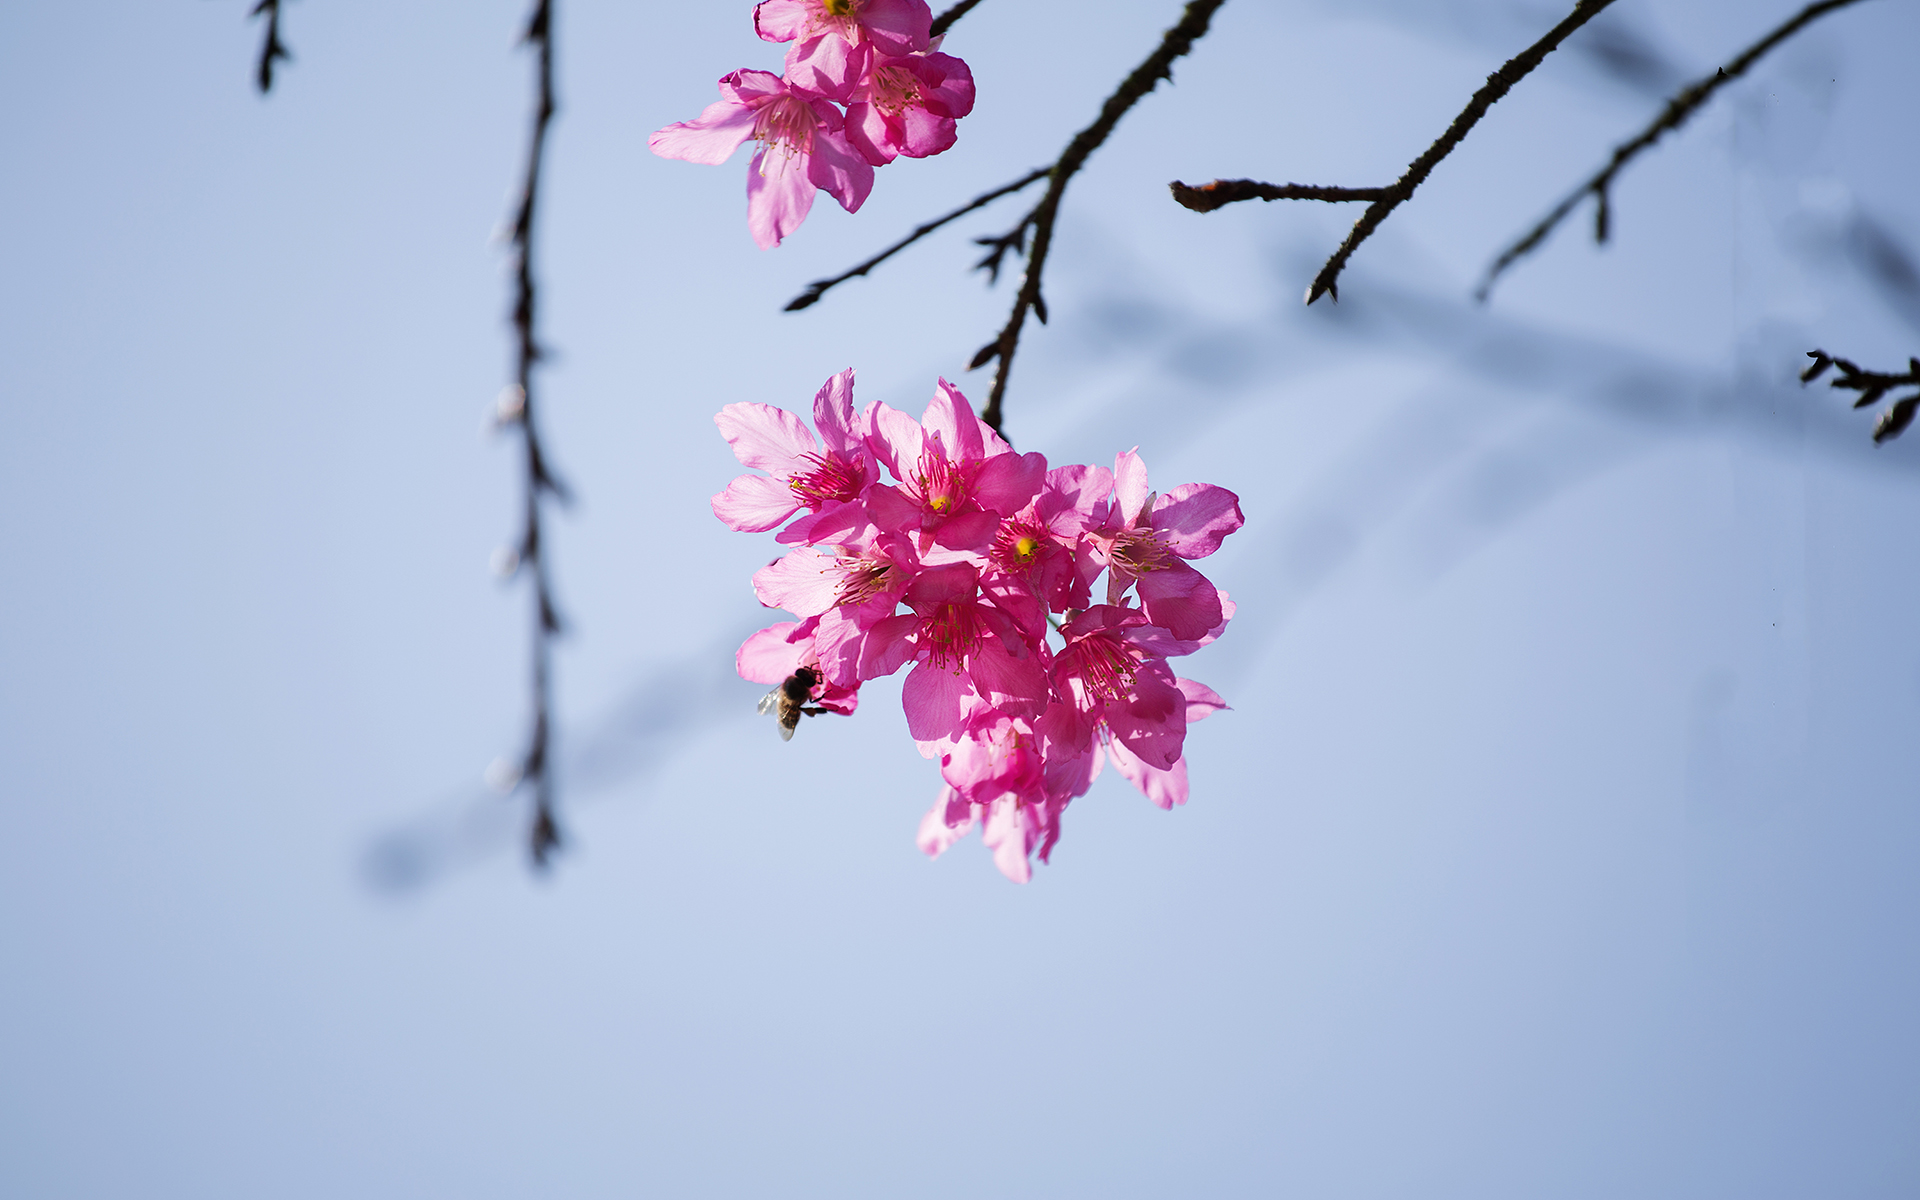 有关淡雅的图片 樱花唯美摄影高清图片(7)